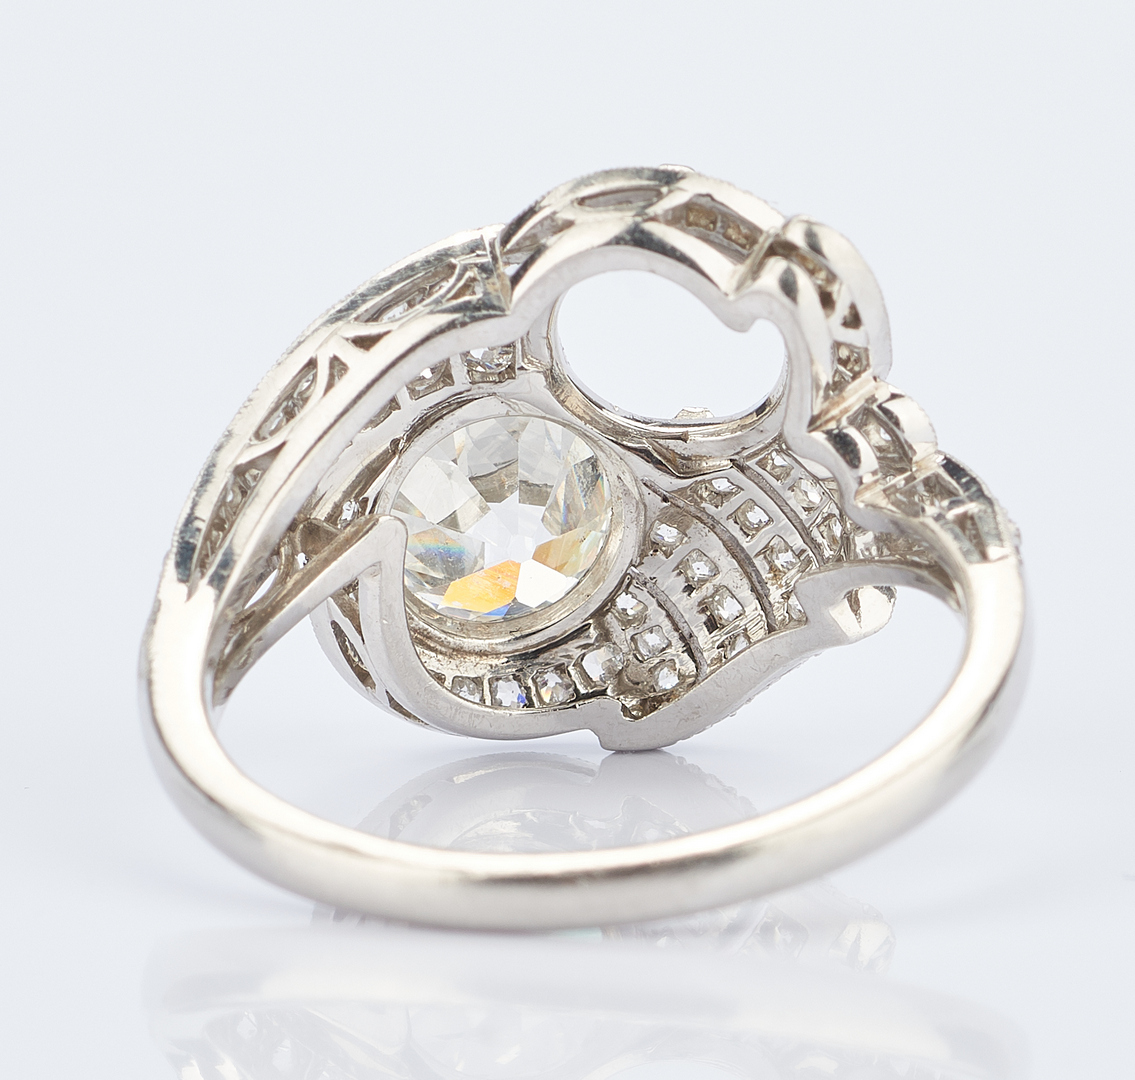 Lot 217: Ladies Platinum Diamond Ring, 1.8 Carats